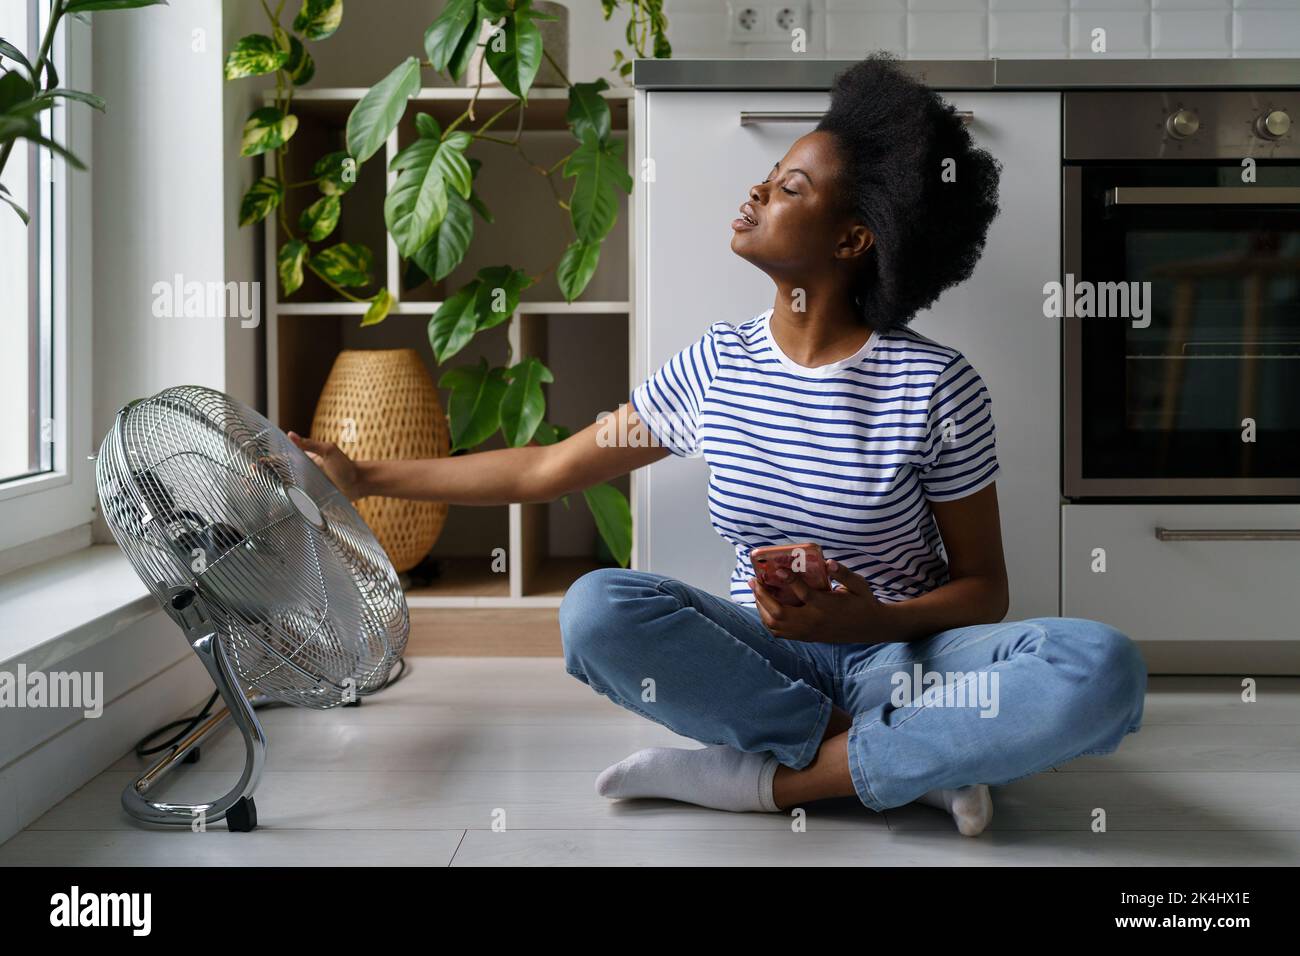 Une jeune femme africaine est assise sur le sol avec un téléphone et attrape les courants d'air émanant du ventilateur électrique Banque D'Images